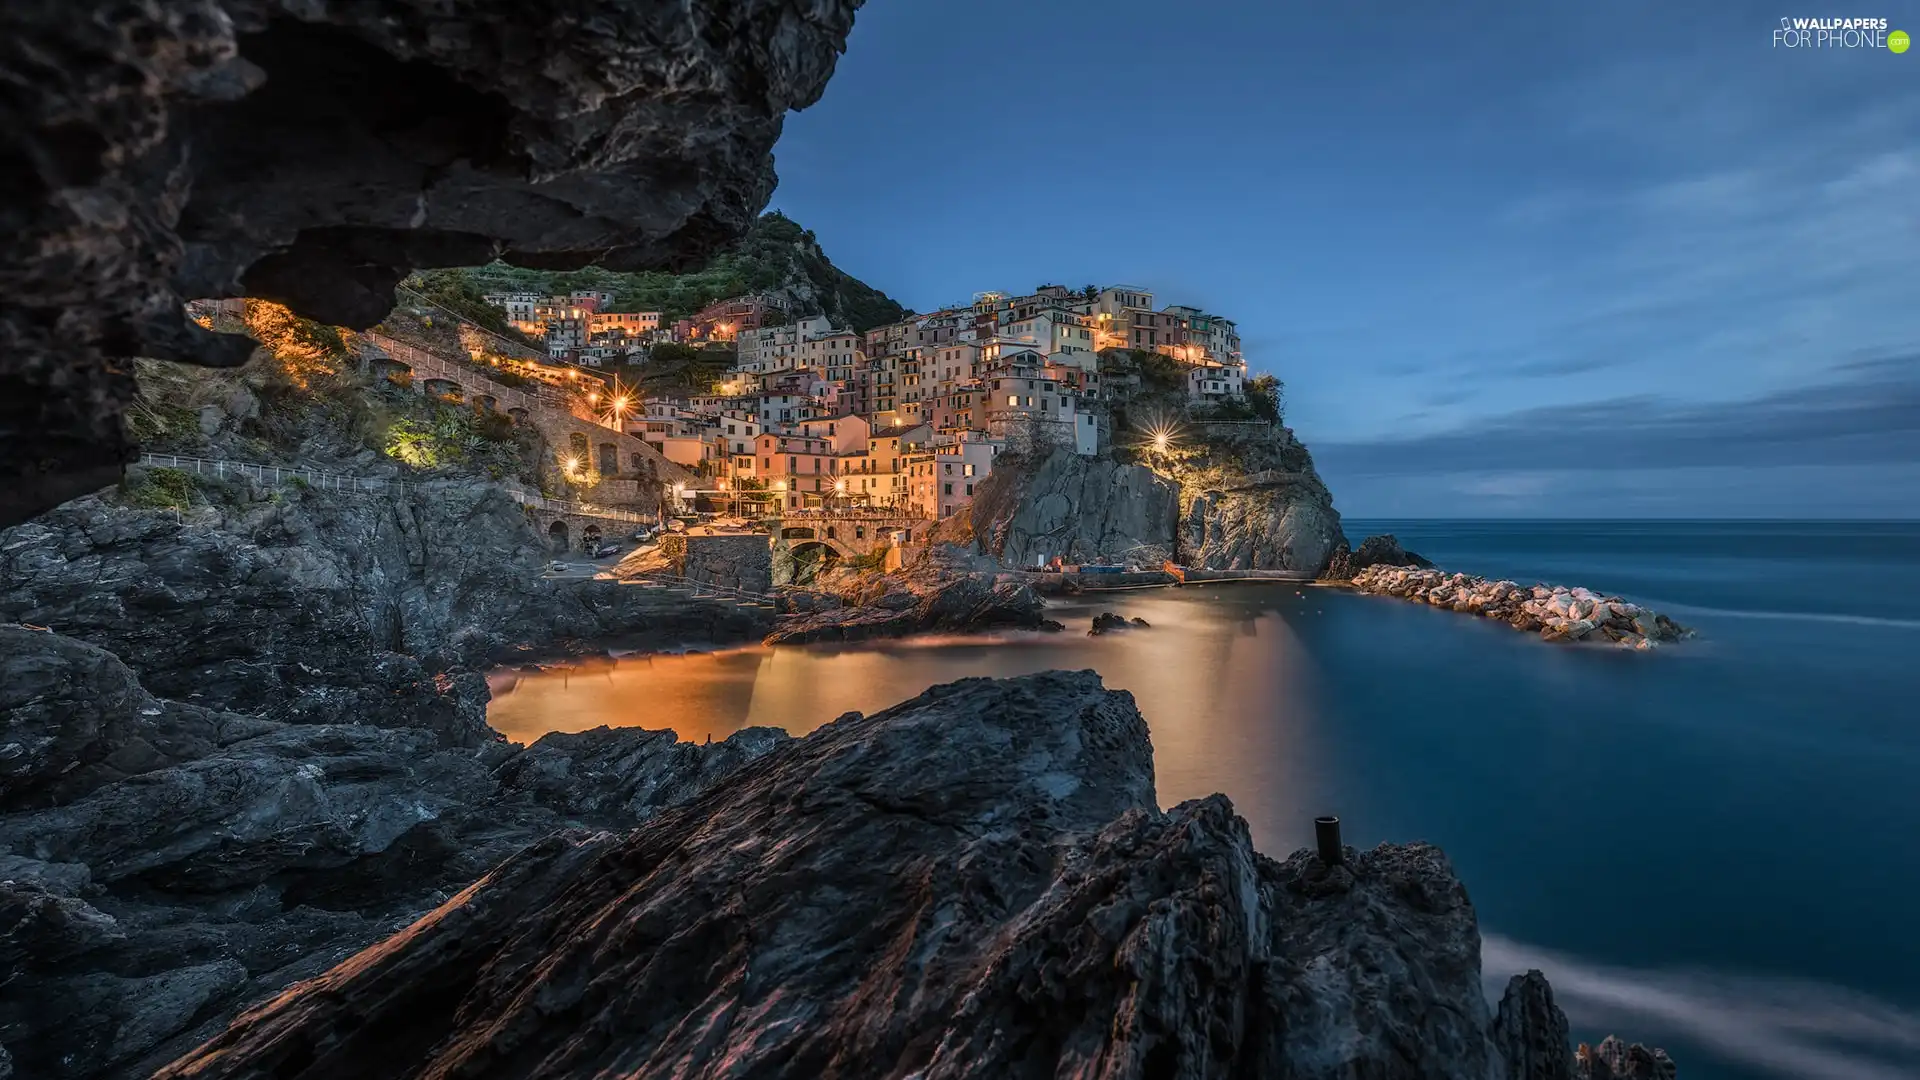 Houses, Riomaggiore Municipality, Cinque Terre, rocks, Ligurian Sea, Italy, Manarola, Gulf, light, color